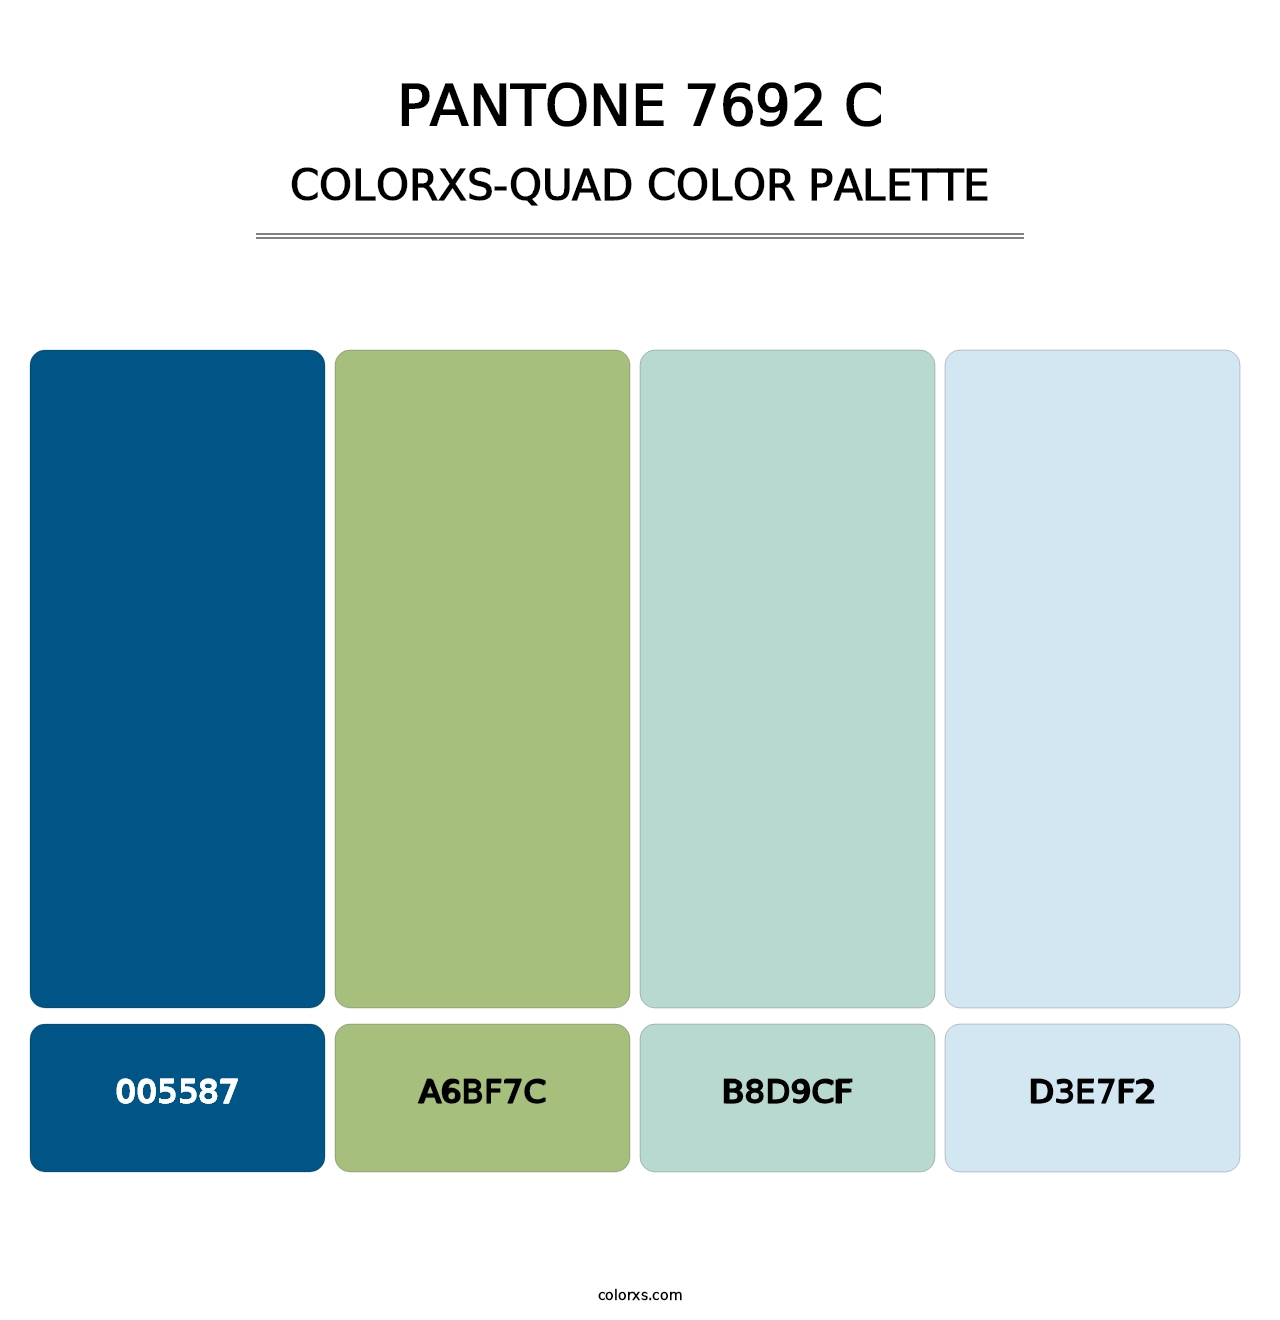 PANTONE 7692 C - Colorxs Quad Palette